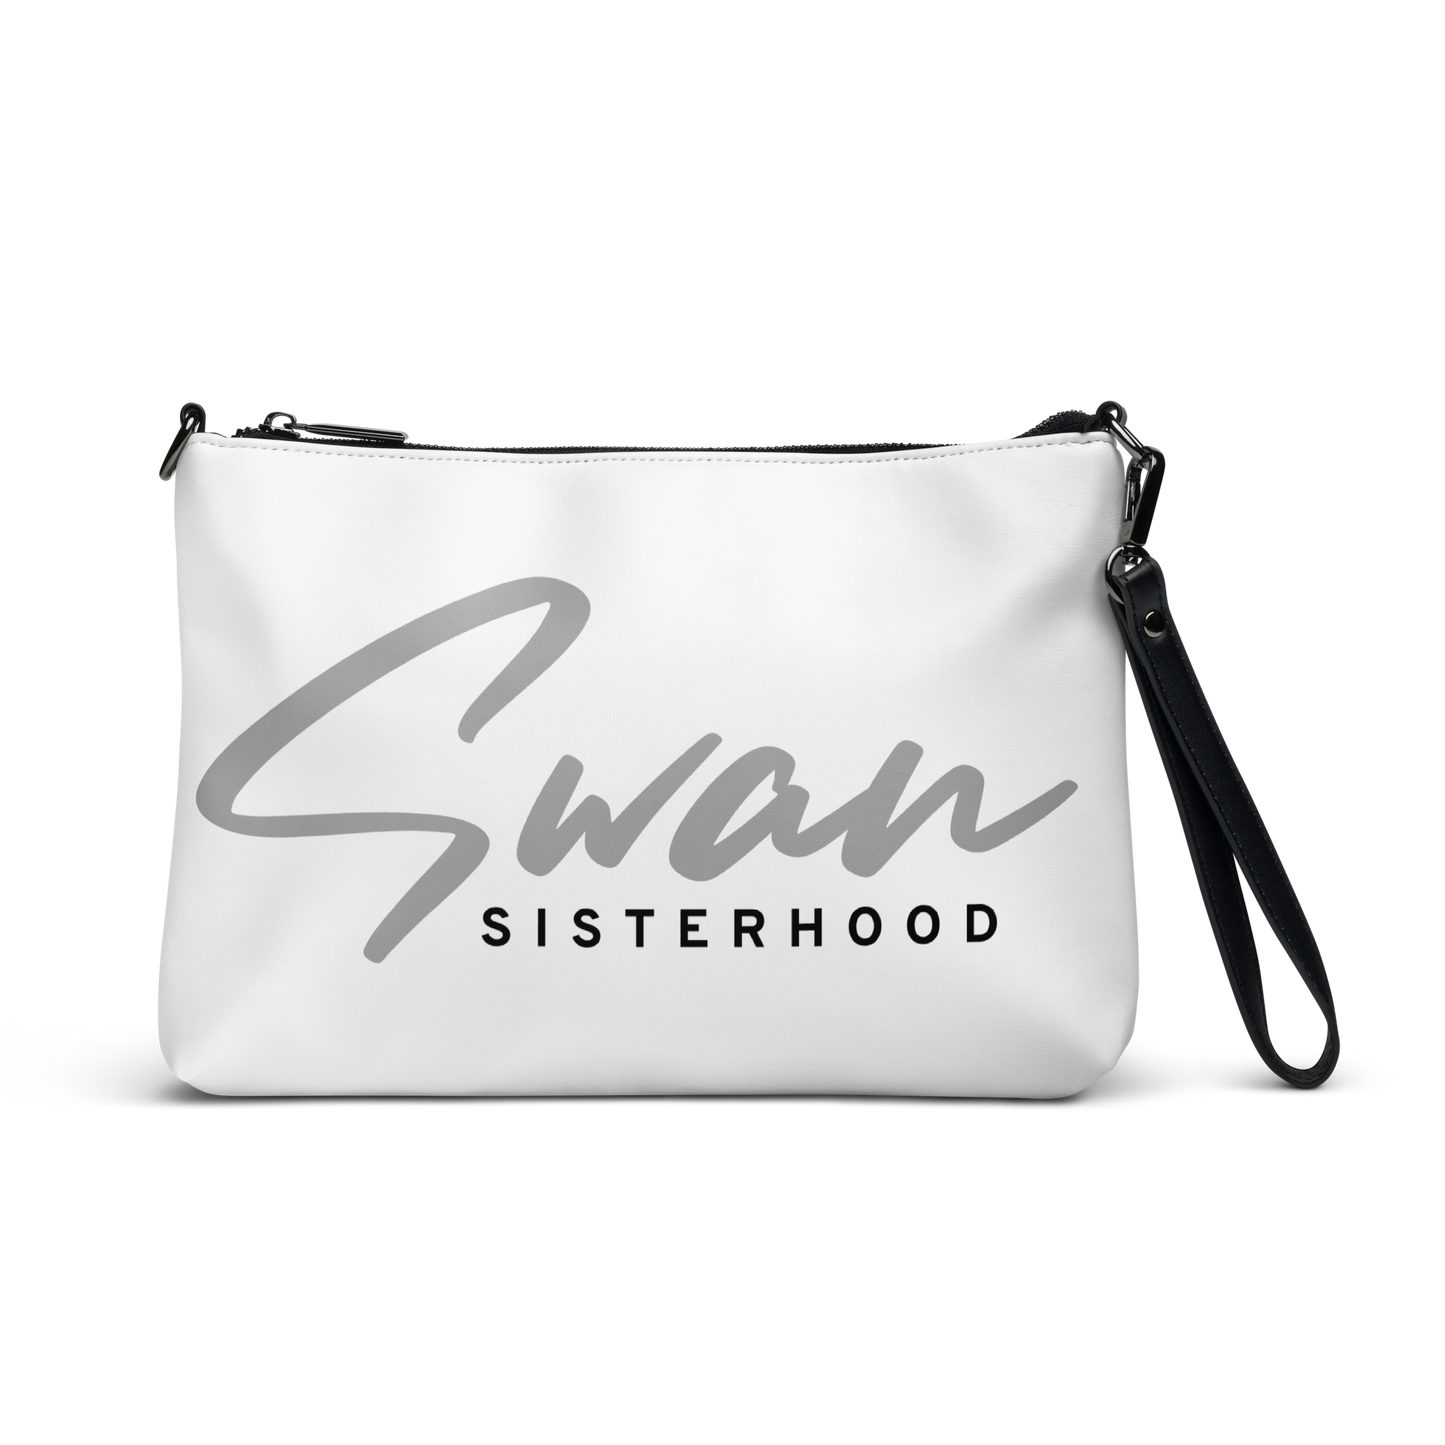 Essential Swan Sisterhood Crossbody